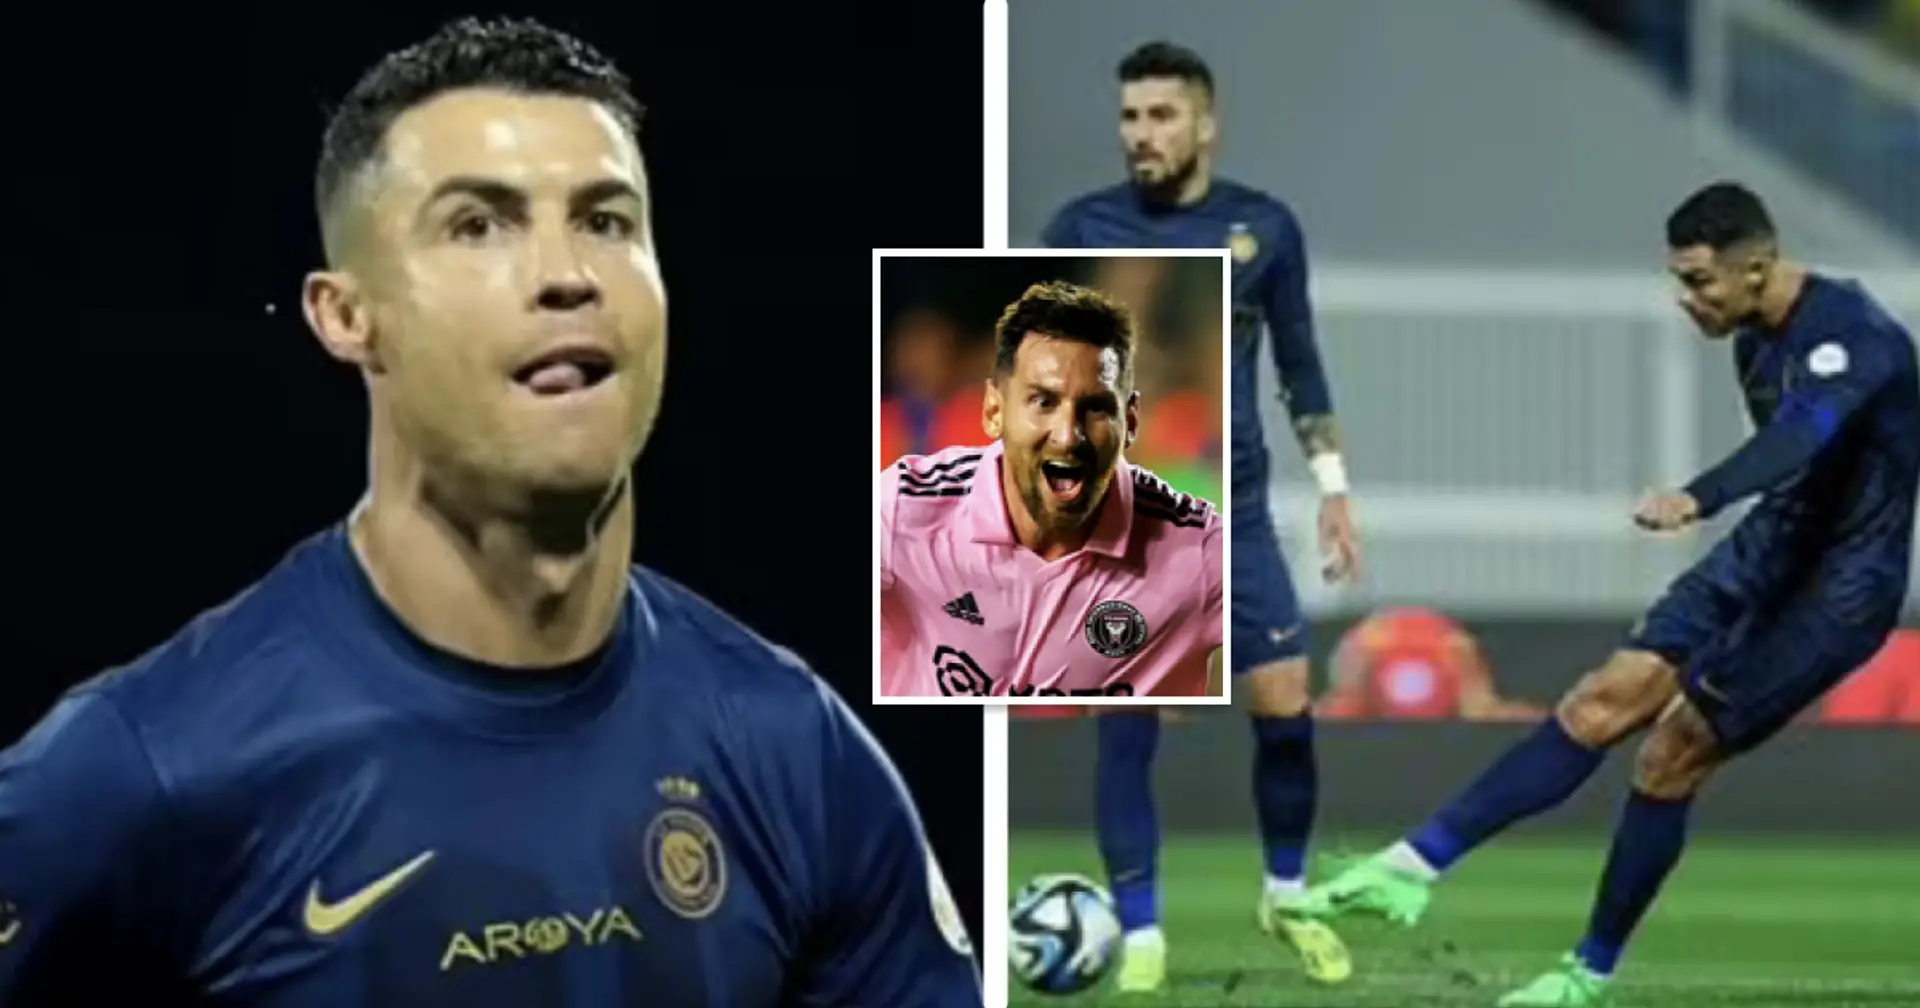 Cristiano Ronaldo marque 2 buts sur coup franc en un seul match pour Al Nassr - Est-il désormais en avance sur Leo Messi ?